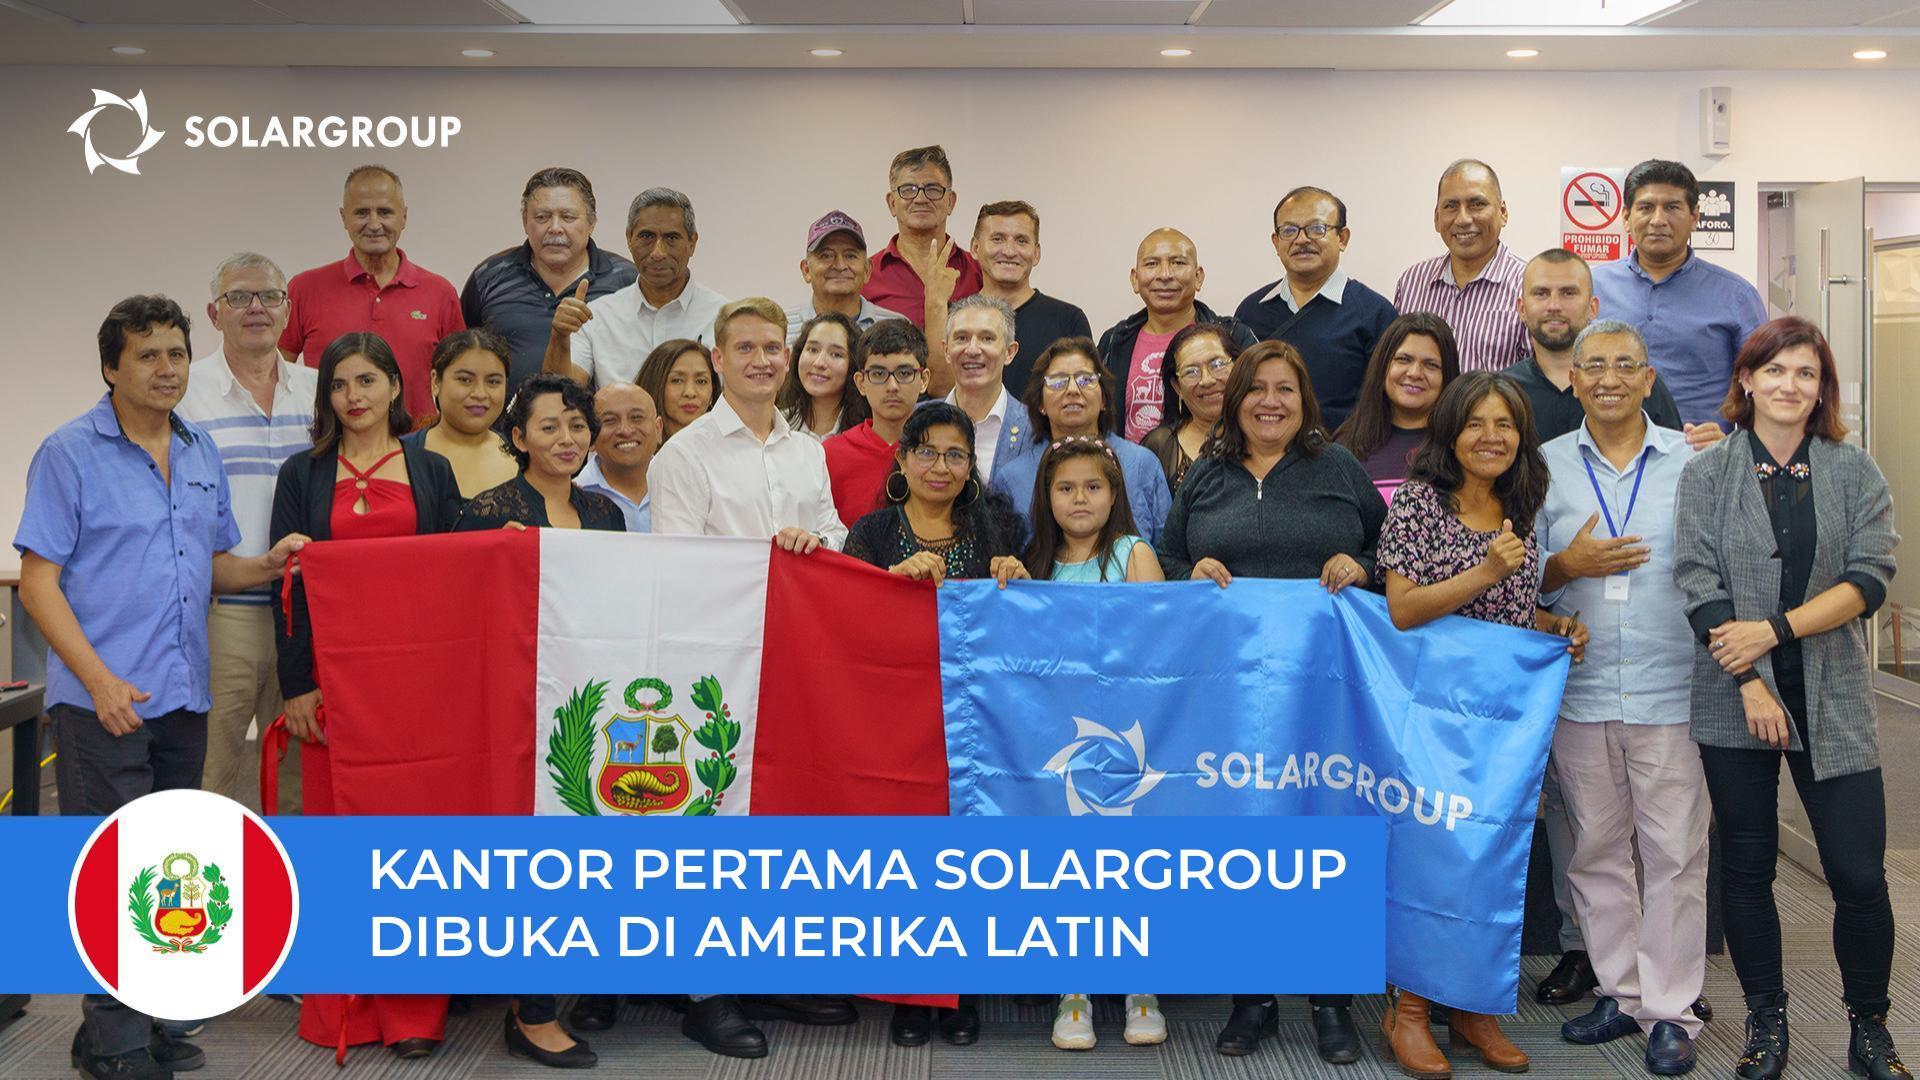 Sebuah langkah baru untuk mengembangkan proyek di Amerika Latin: SOLARGROUP membuka kantornya di Peru